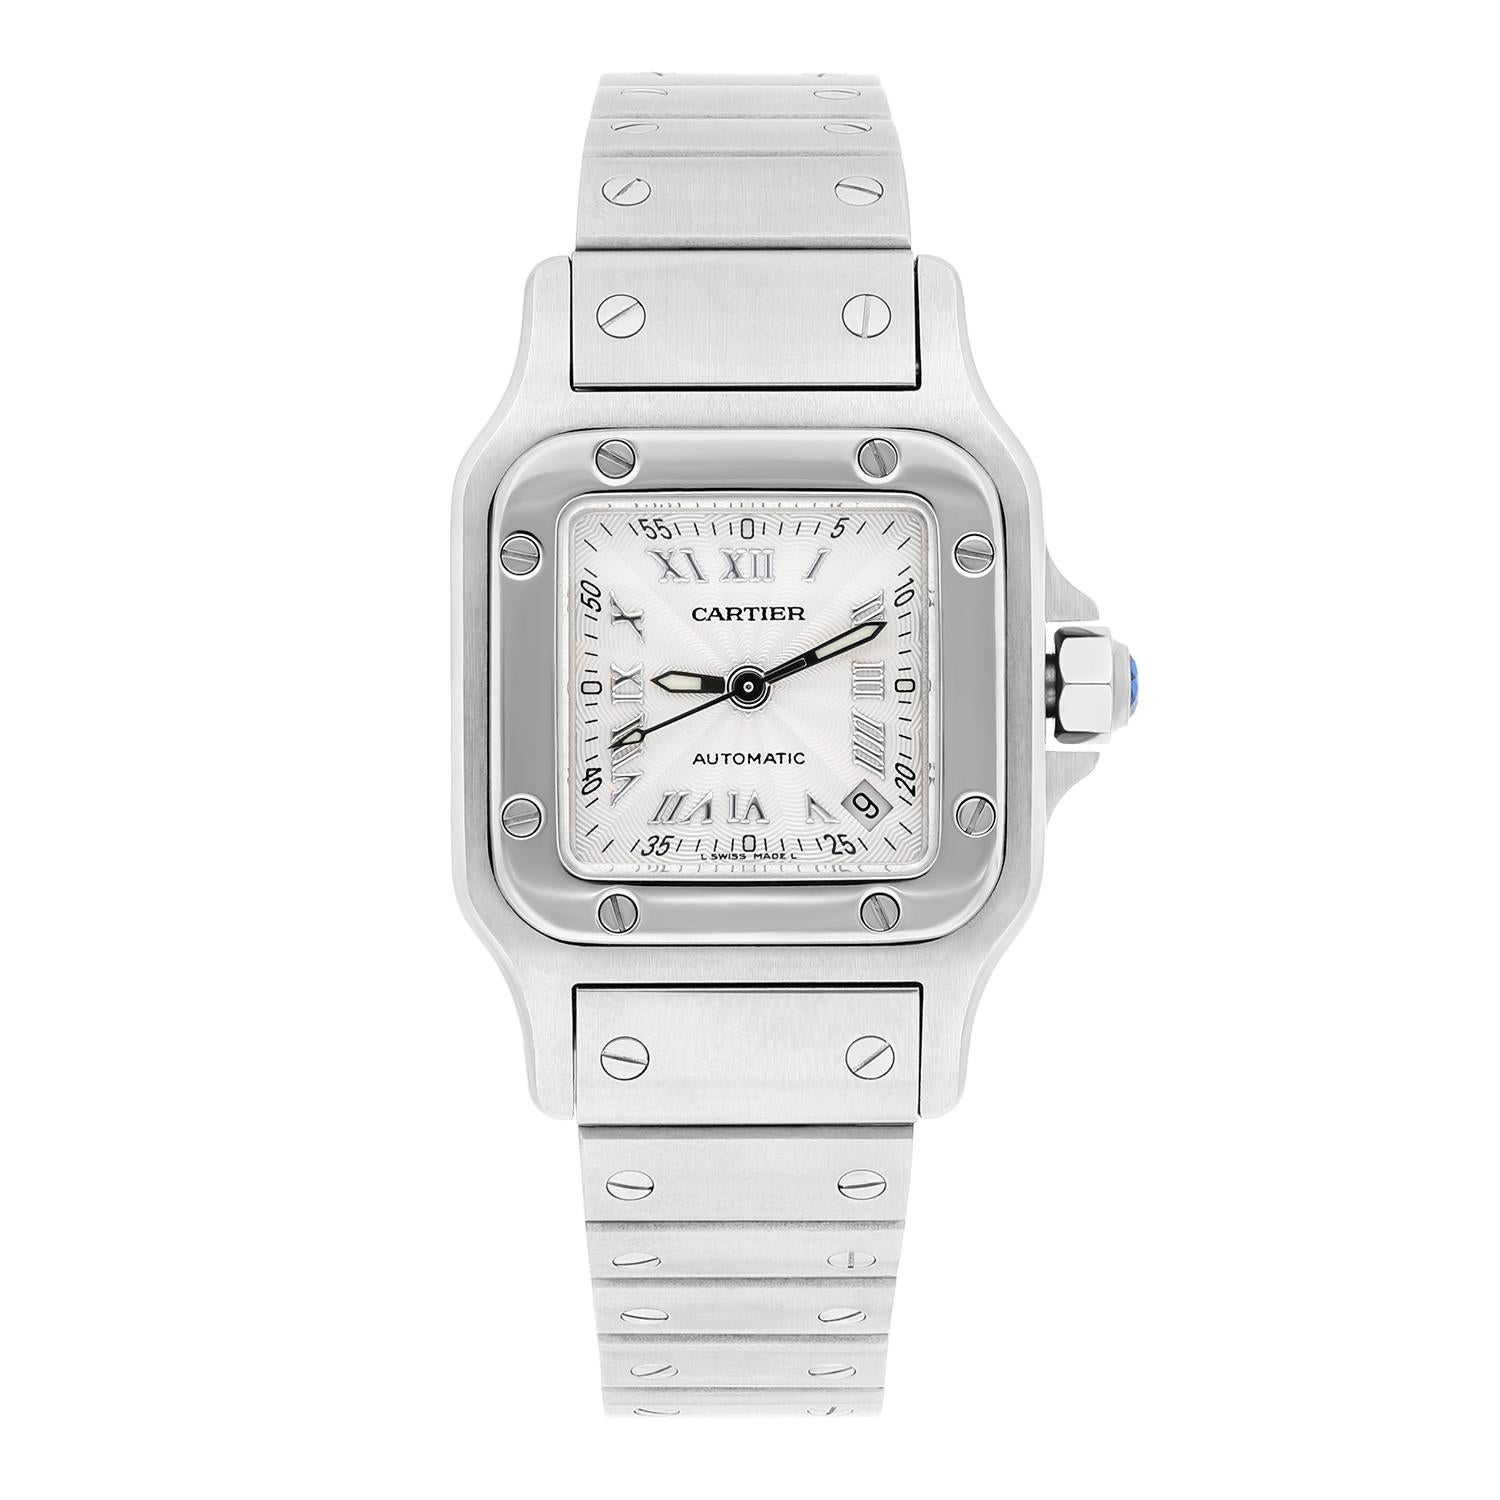 Diese Cartier Santos Galbee Armbanduhr ist ein zeitloses Stück, das Luxus und Vielseitigkeit vereint. Die Uhr hat ein Edelstahlgehäuse mit fester Lünette und ein silbernes Zifferblatt mit römischen Ziffern. Das Armband ist ebenfalls aus Edelstahl